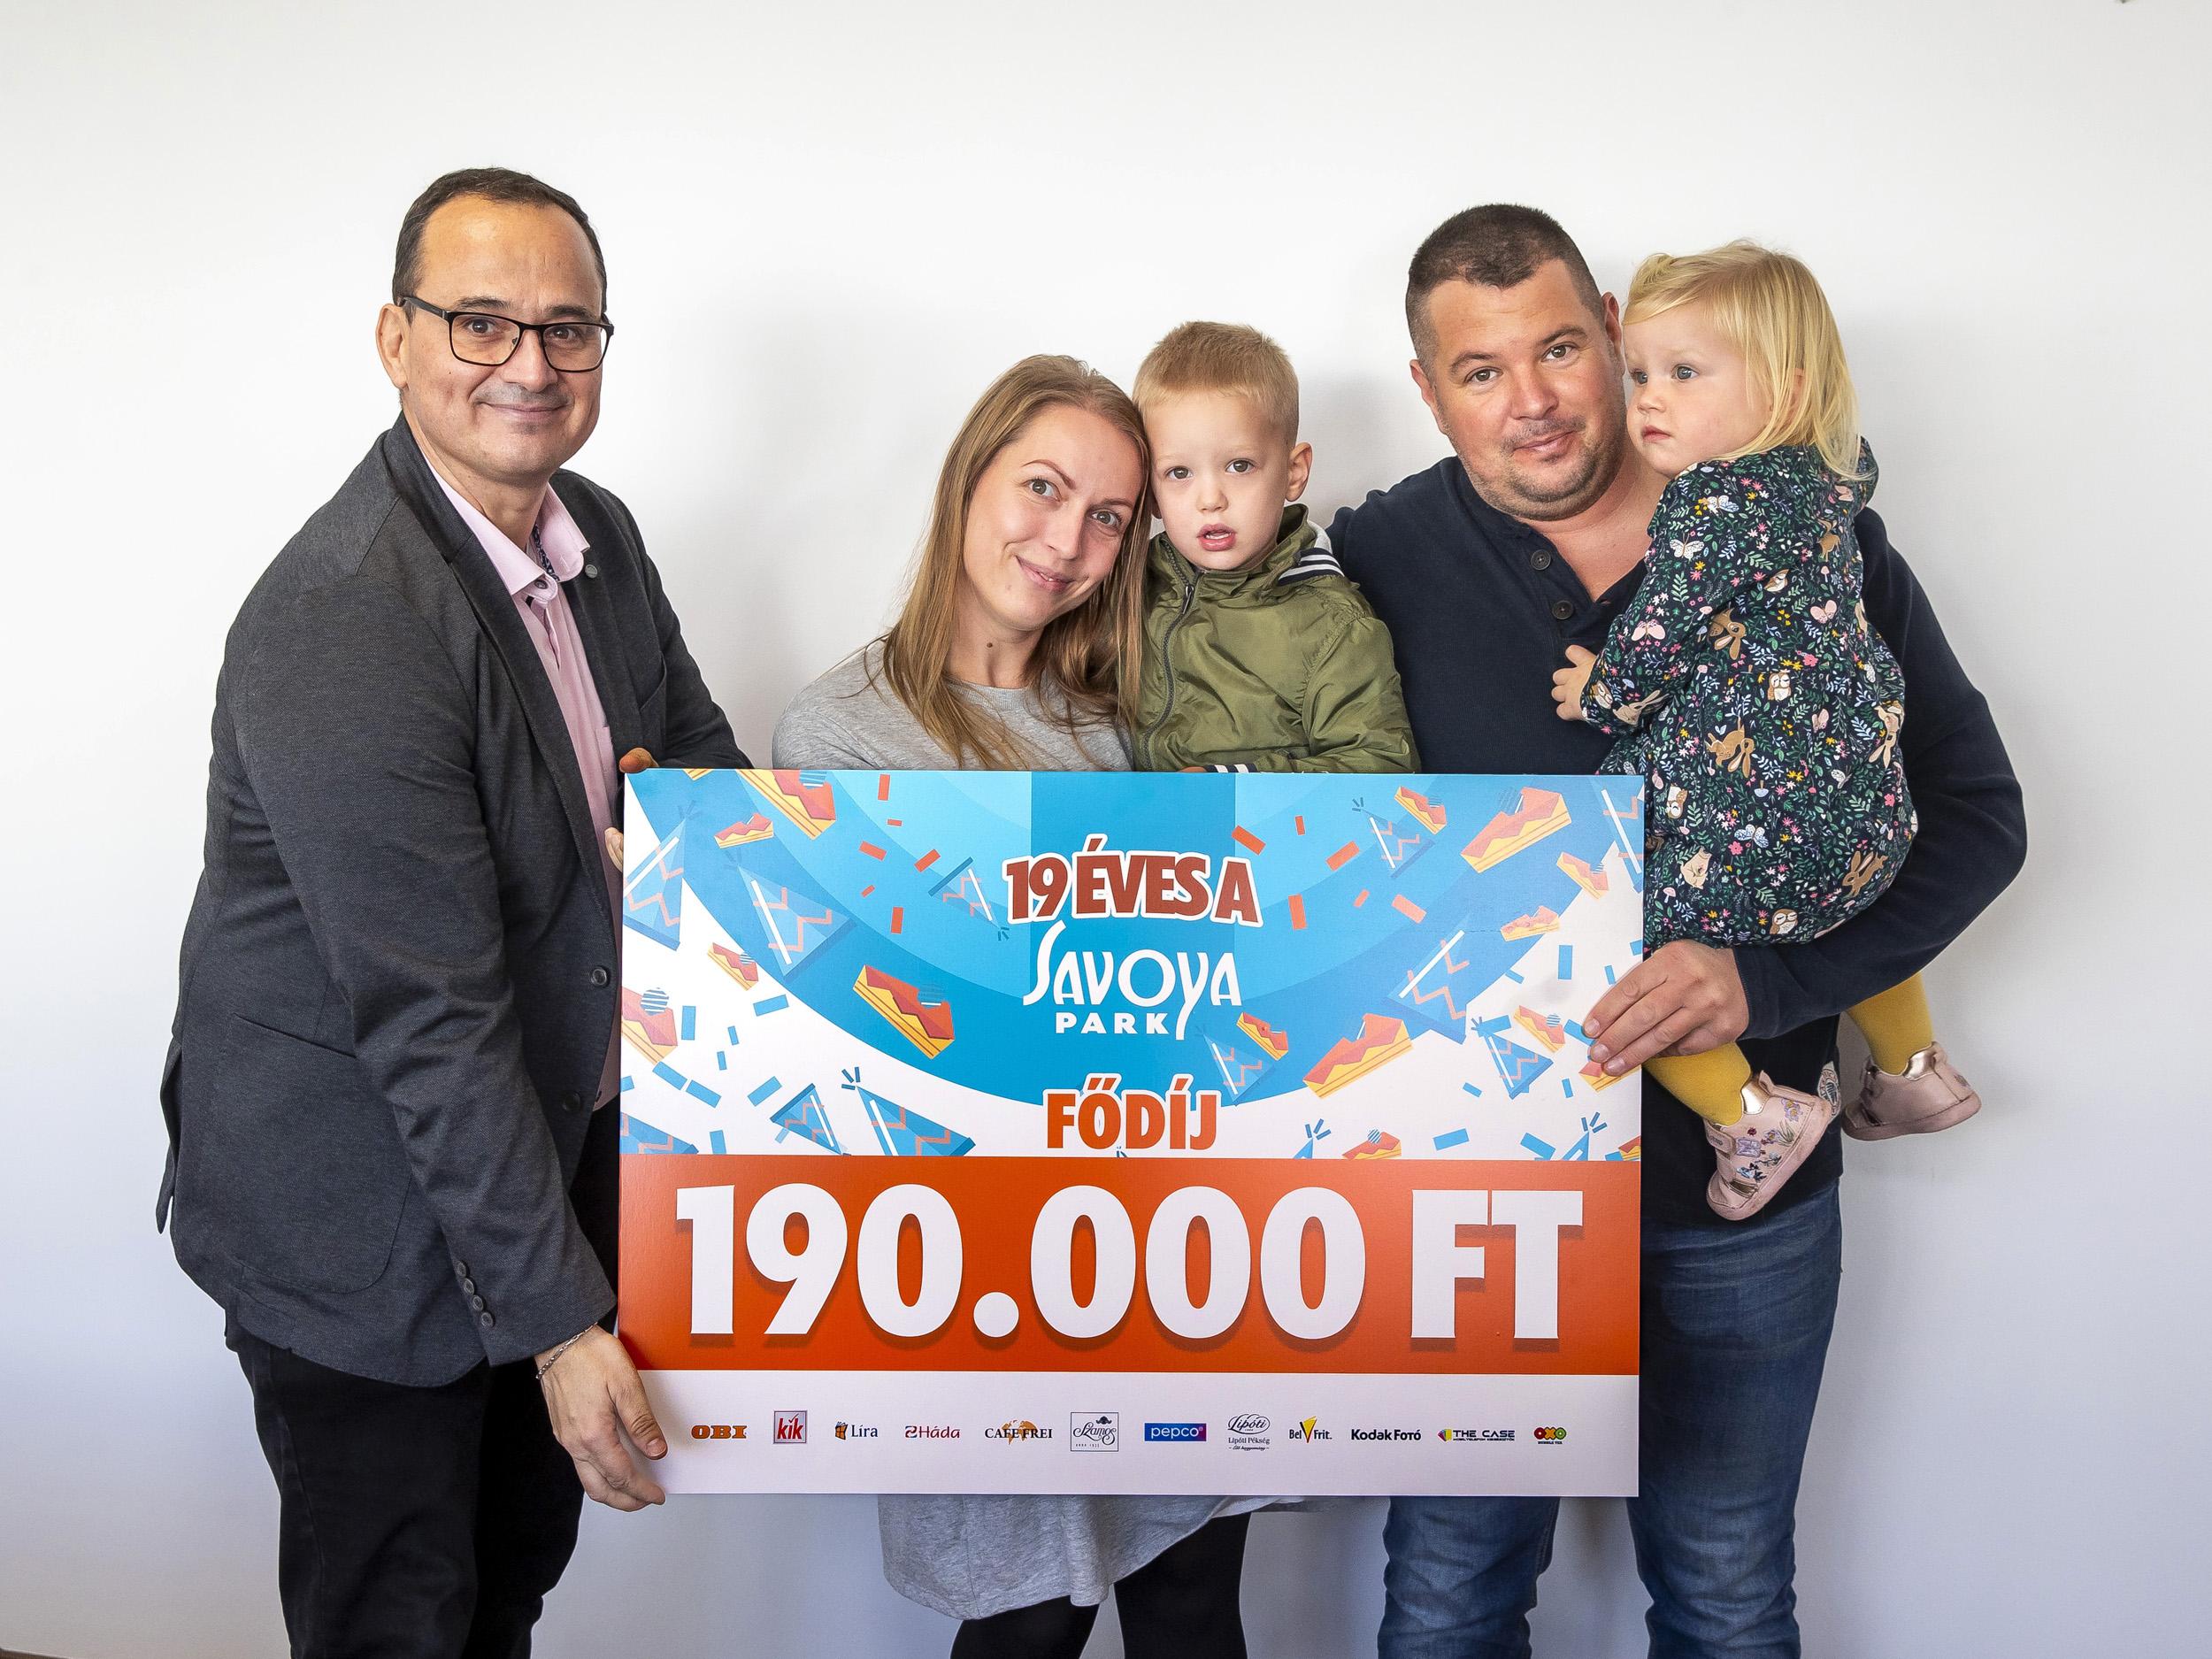 Kétgyermekes család nyerte a 190 ezer forintos fődíjat